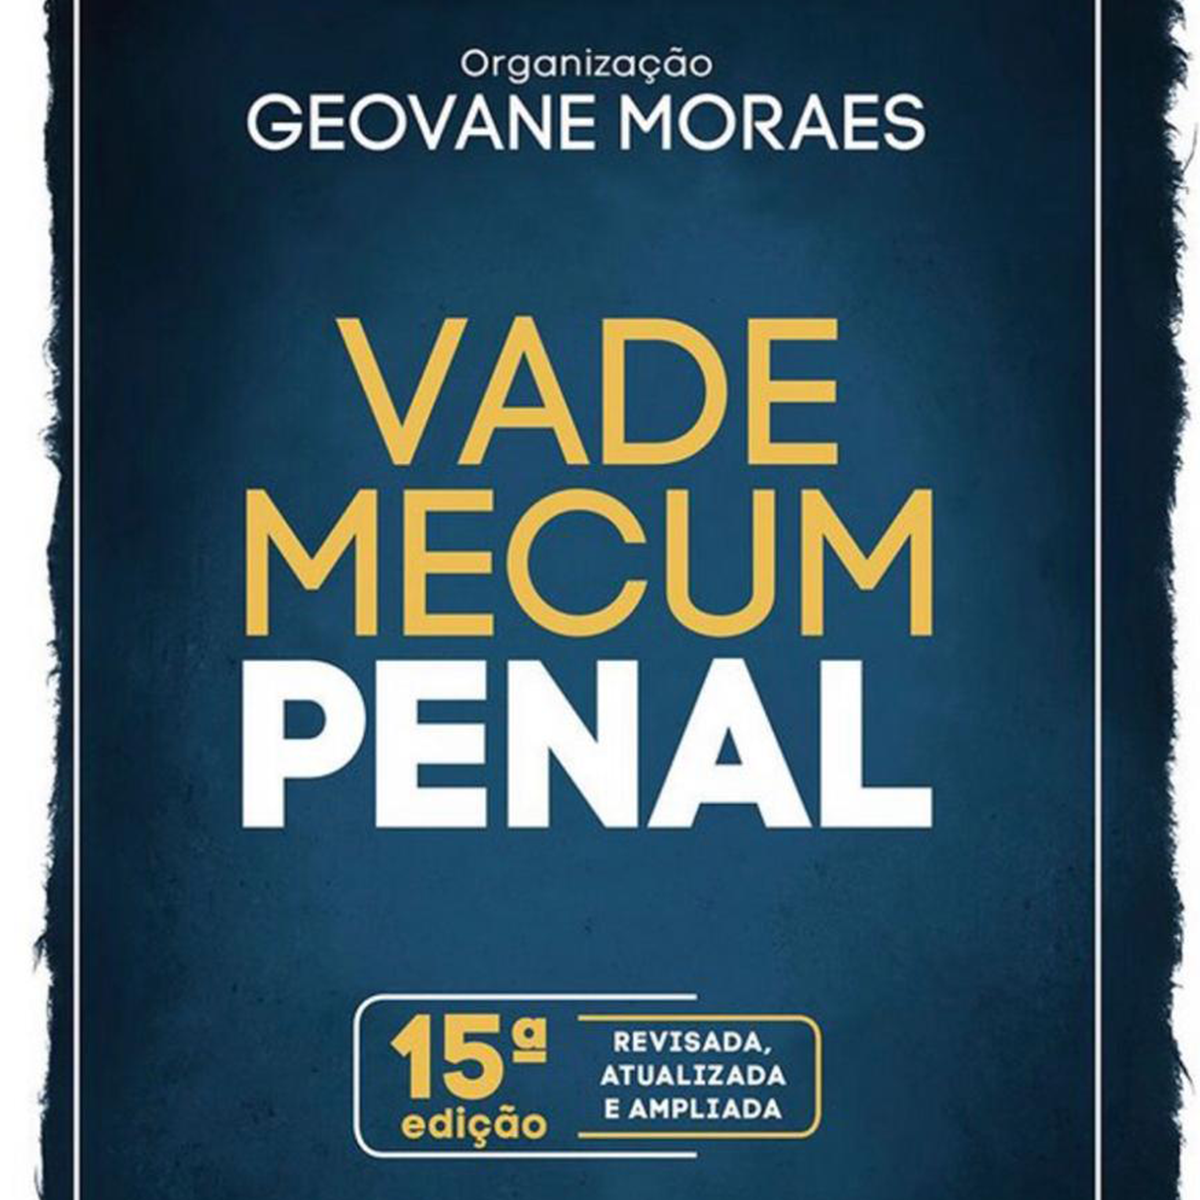 Chegou o novo Vade Mecum Penal do Professor Geovane Moraes!